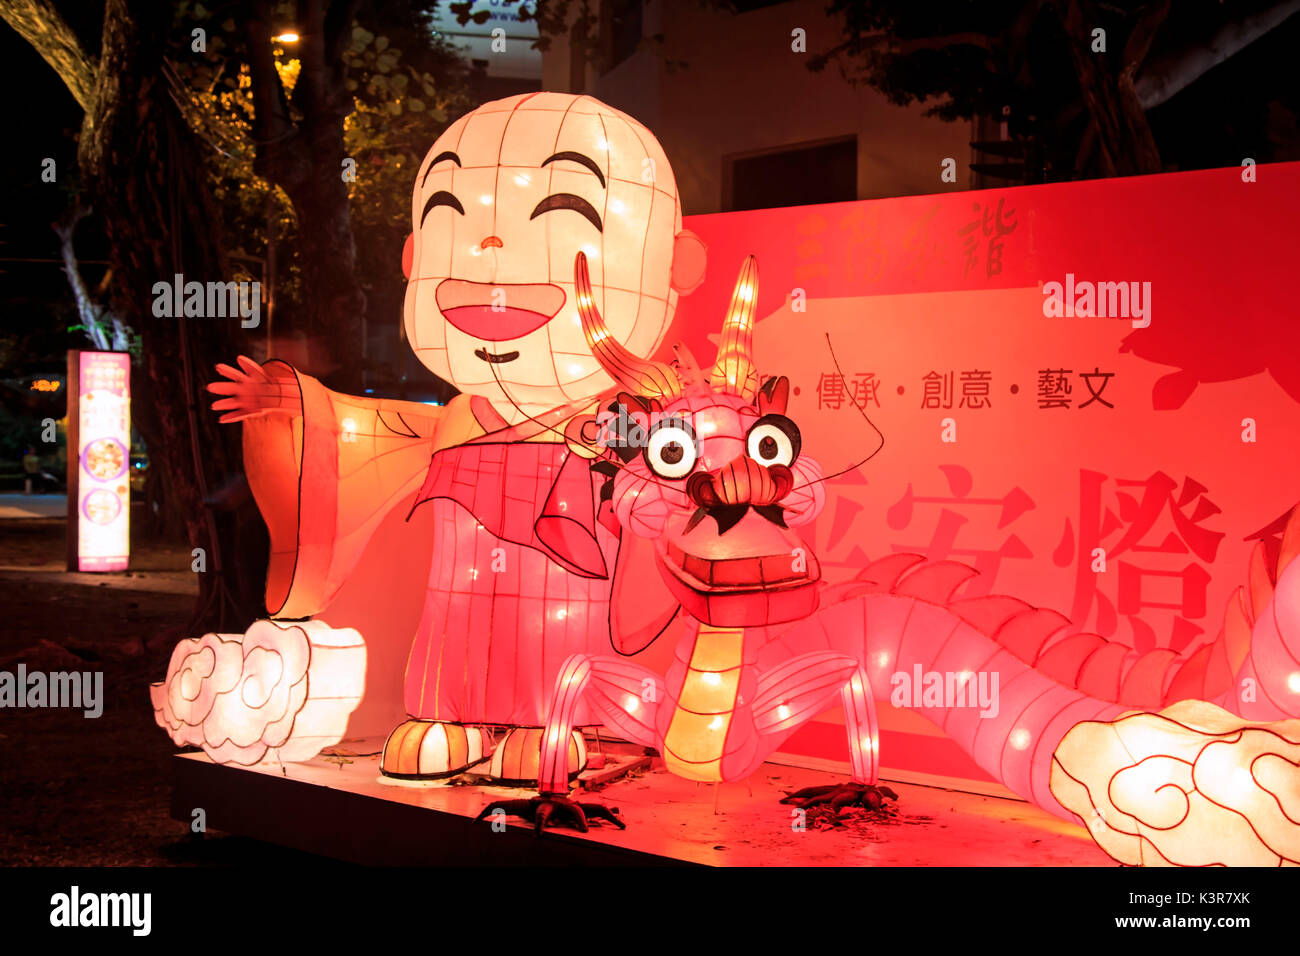 Kaohsiung, Taiwan. Lanterna di carta presso il fiume amante di Kaohsiung, Taiwan, per celebrare il nuovo anno cinese. Il Capodanno cinese è un importante festival cinese ha celebrato presso la volta del calendario cinese. In Cina, è anche noto come il Festival di Primavera, la traduzione letterale del moderno nome cinese. Foto Stock